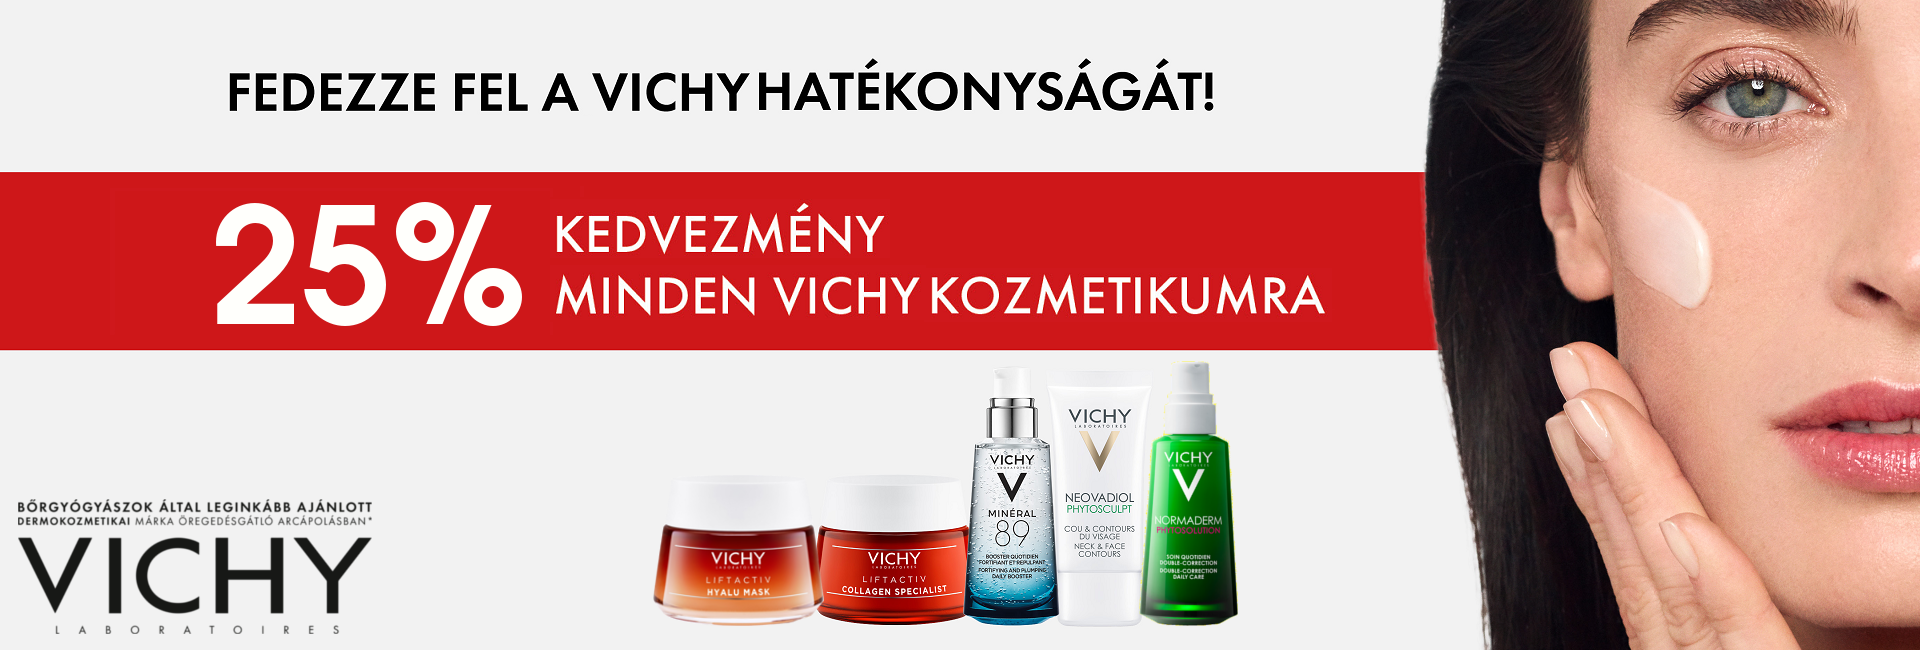 2020. február 10-17. között minden Vichy terméket 25% kedvezménnyel kínálunk!